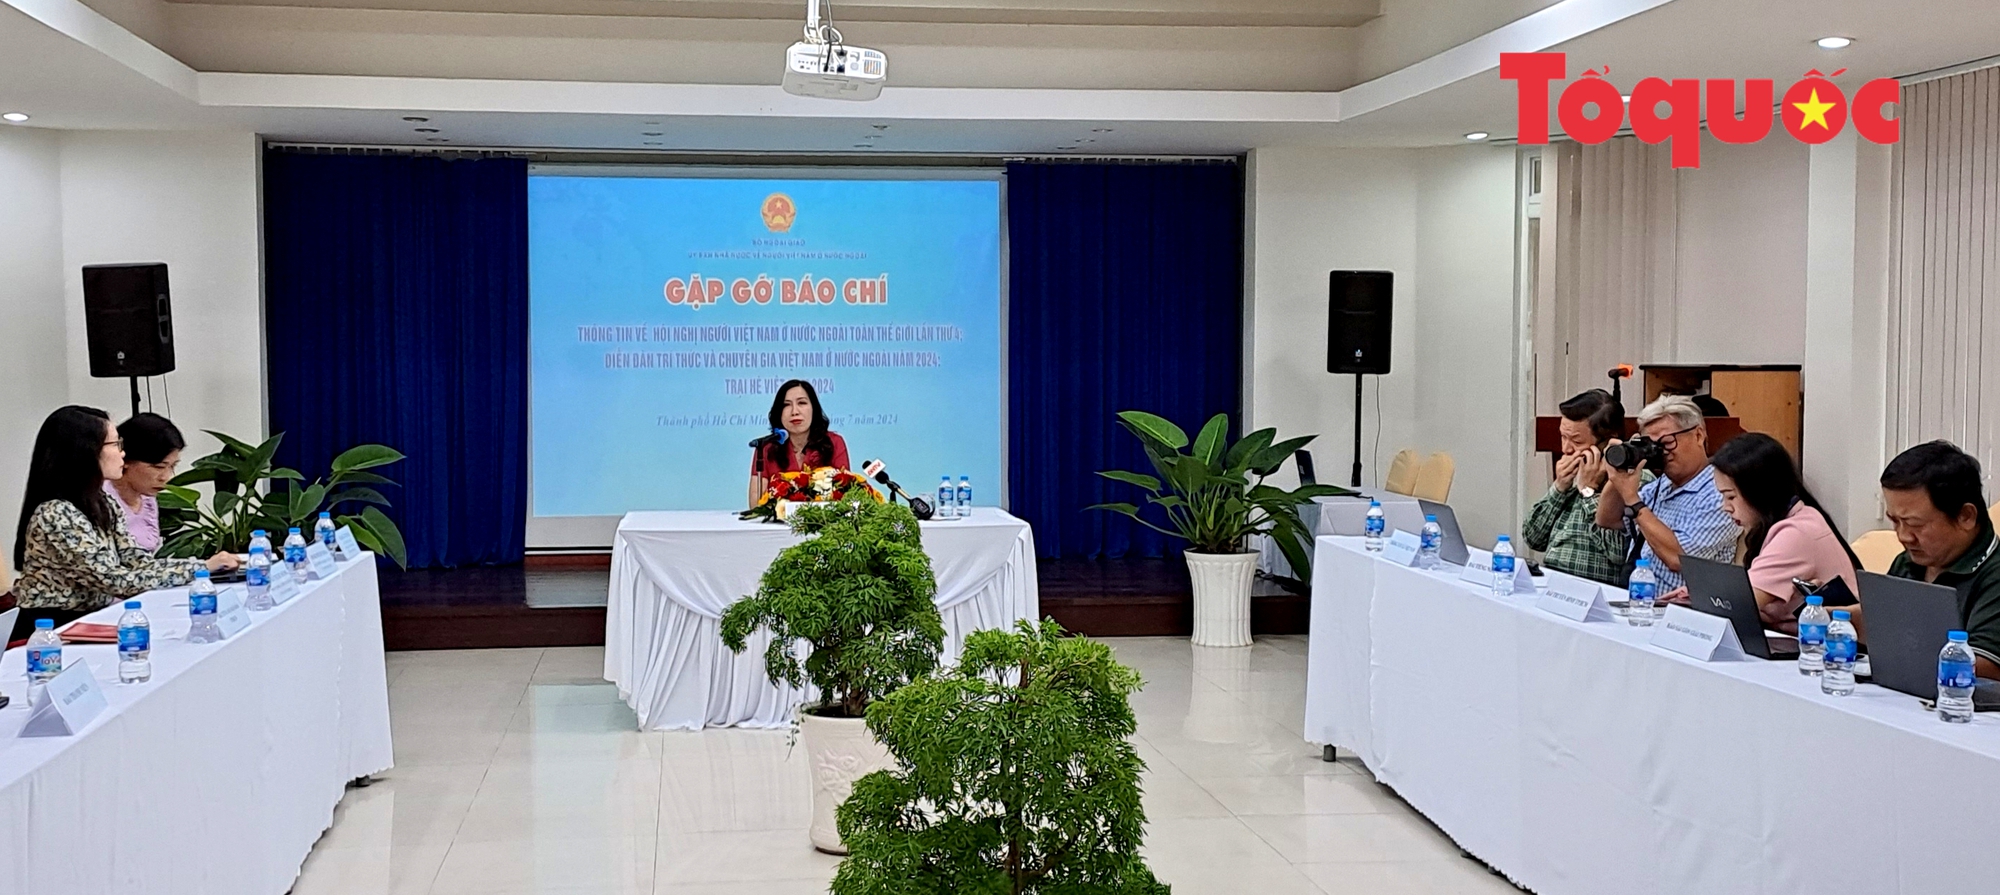 Hội nghị người Việt Nam ở nước ngoài toàn thế giới lần thứ 4, Diễn đàn Trí thức và chuyên gia Việt Nam ở nước ngoài năm 2024 diễn ra từ ngày 22-23/8 - Ảnh 2.